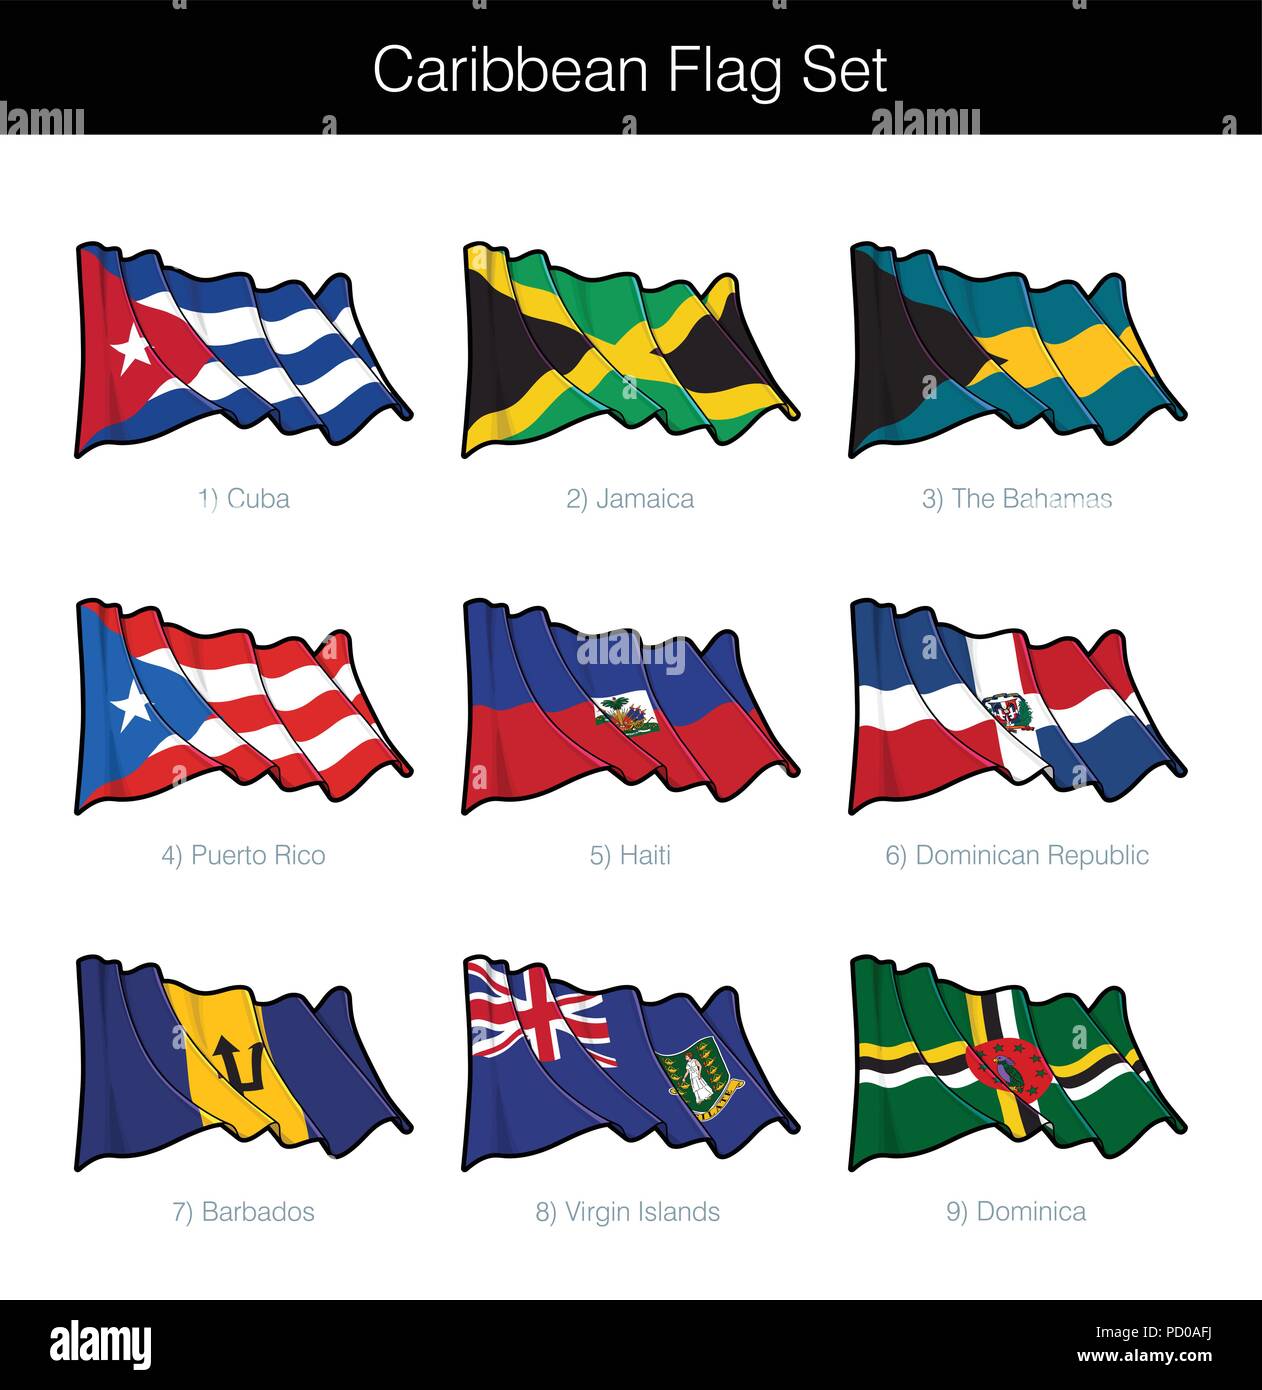 Caraibi sventola Bandiera Set. Il set include le bandiere di Cuba, Giamaica, Bahamas, Puerto Rico, Haiti, Repubblica Dominicana, Barbados, British Virgin Illustrazione Vettoriale